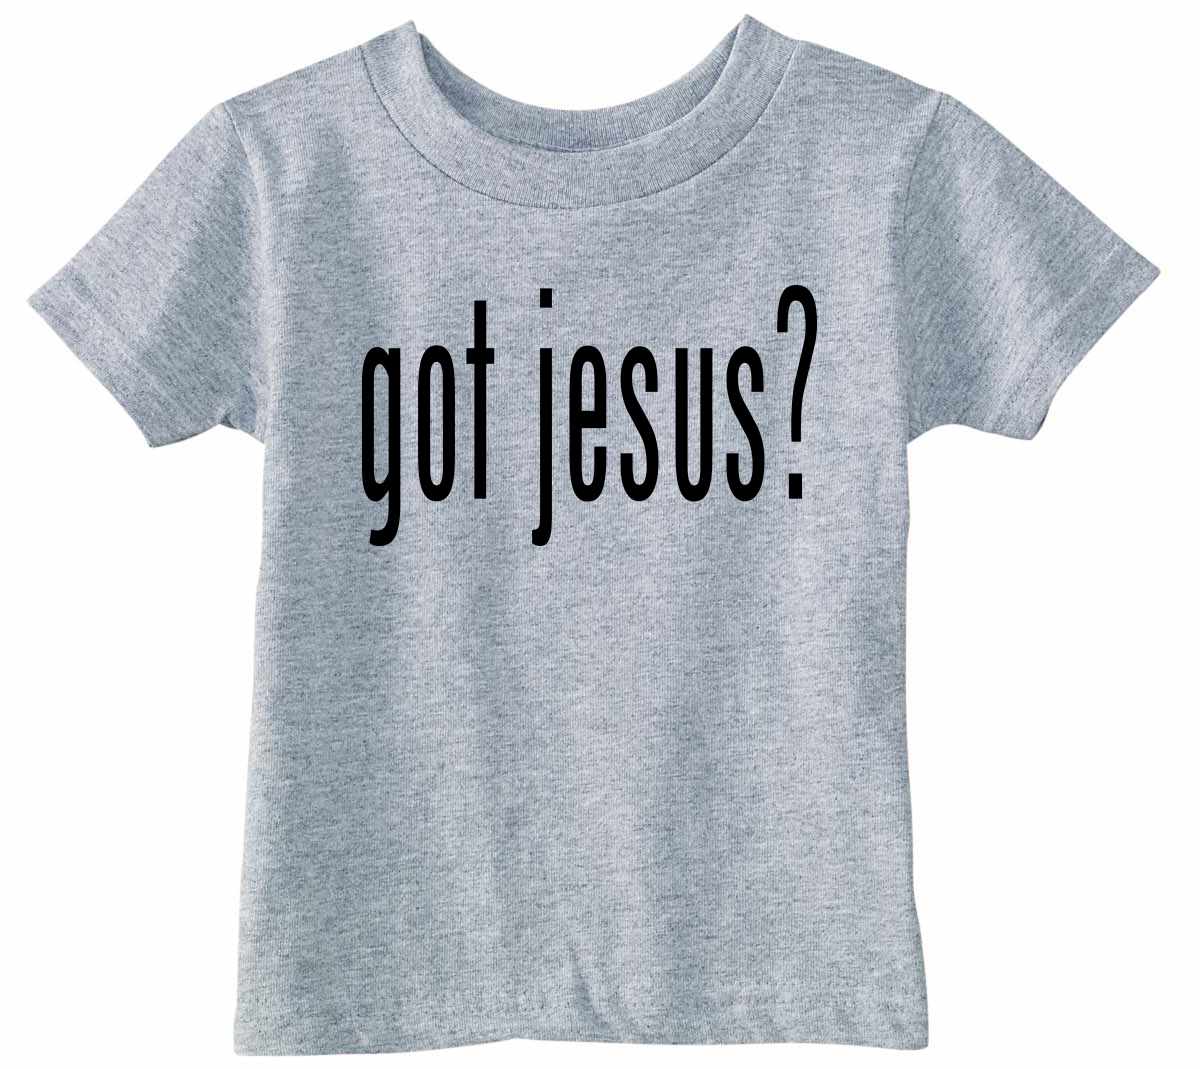 GOT JESUS? on Infant-Toddler T-Shirt (#366-7)